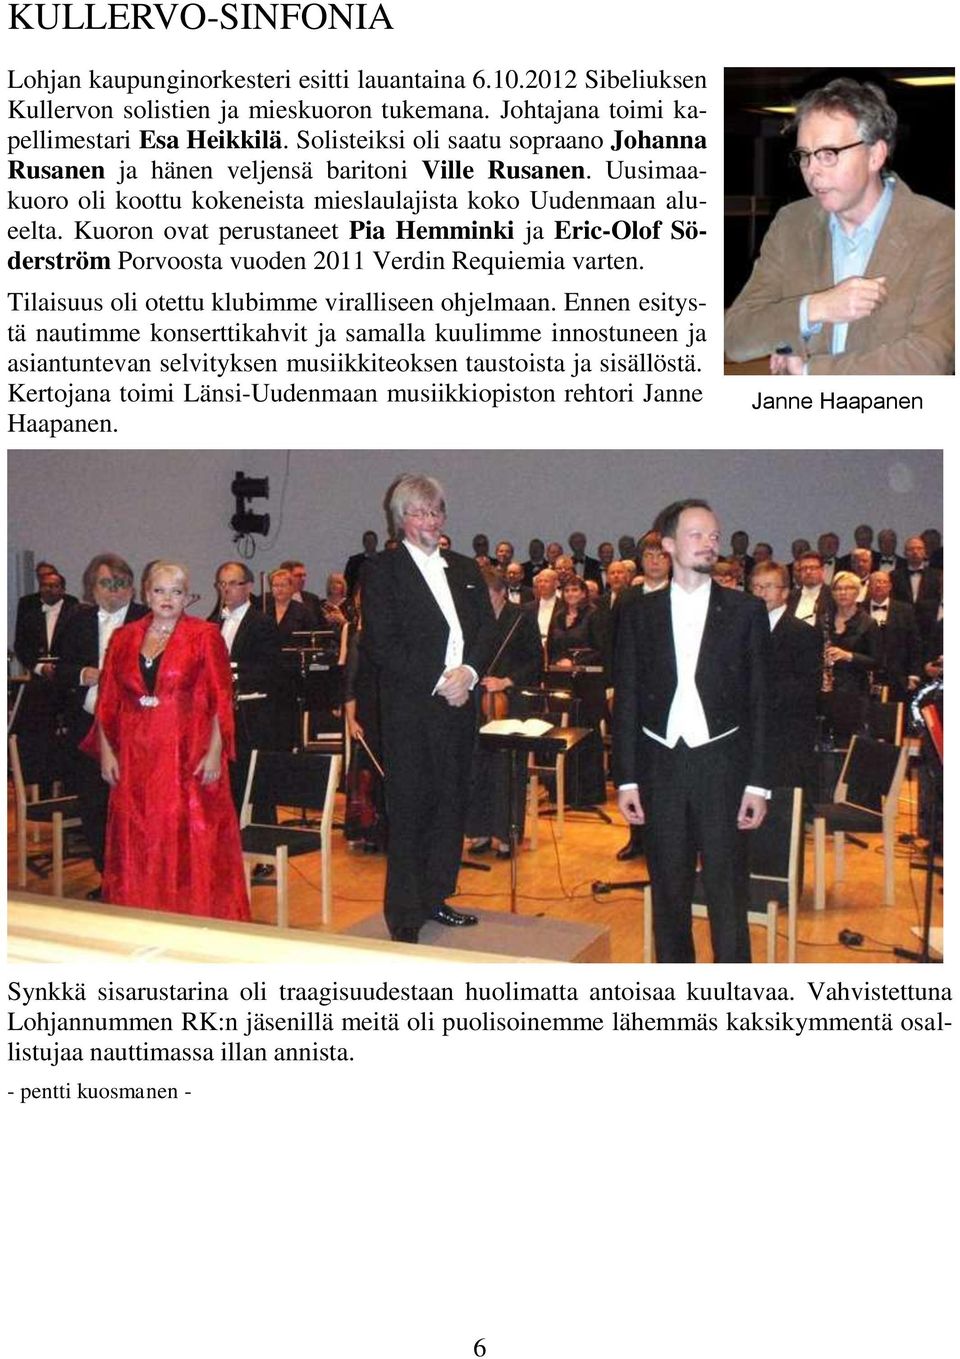 Kuoron ovat perustaneet Pia Hemminki ja Eric-Olof Söderström Porvoosta vuoden 2011 Verdin Requiemia varten. Tilaisuus oli otettu klubimme viralliseen ohjelmaan.